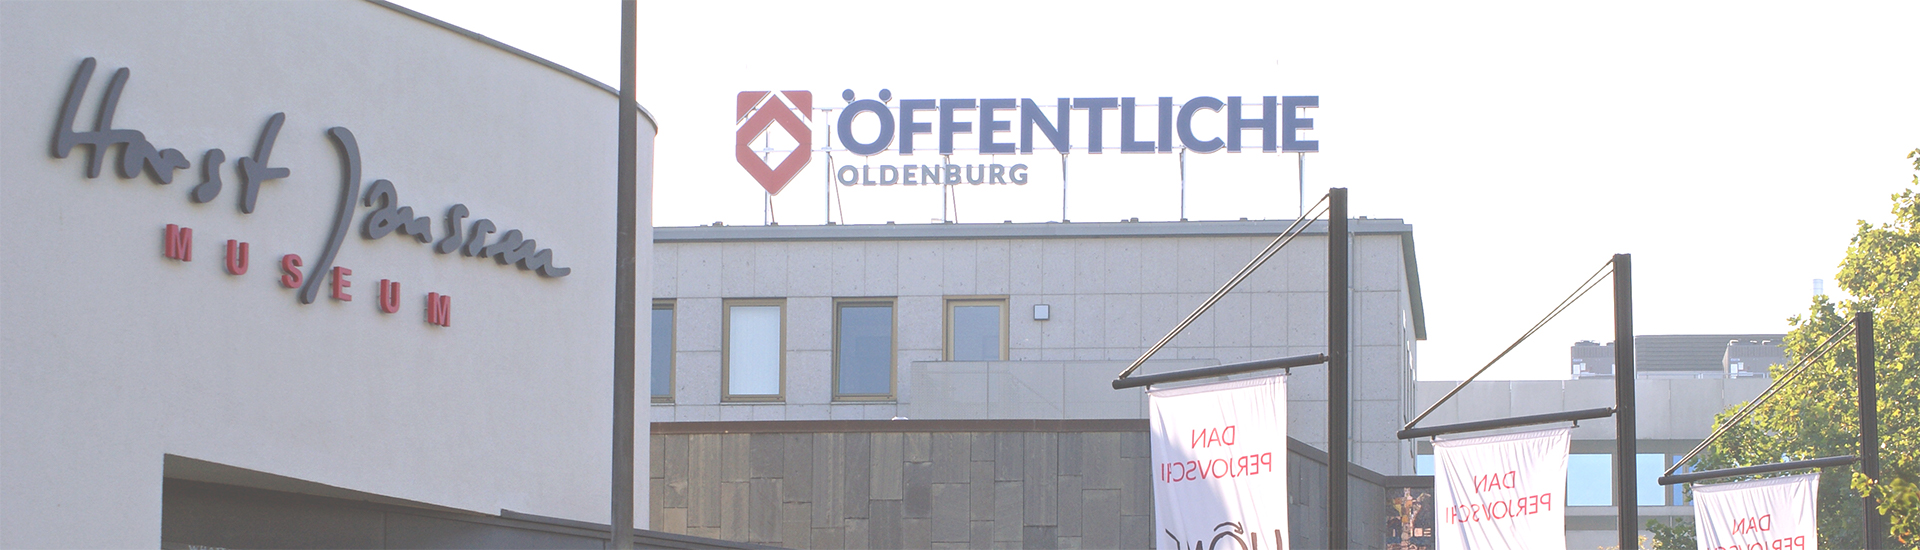 Öffentliche Oldenburg Gebäude